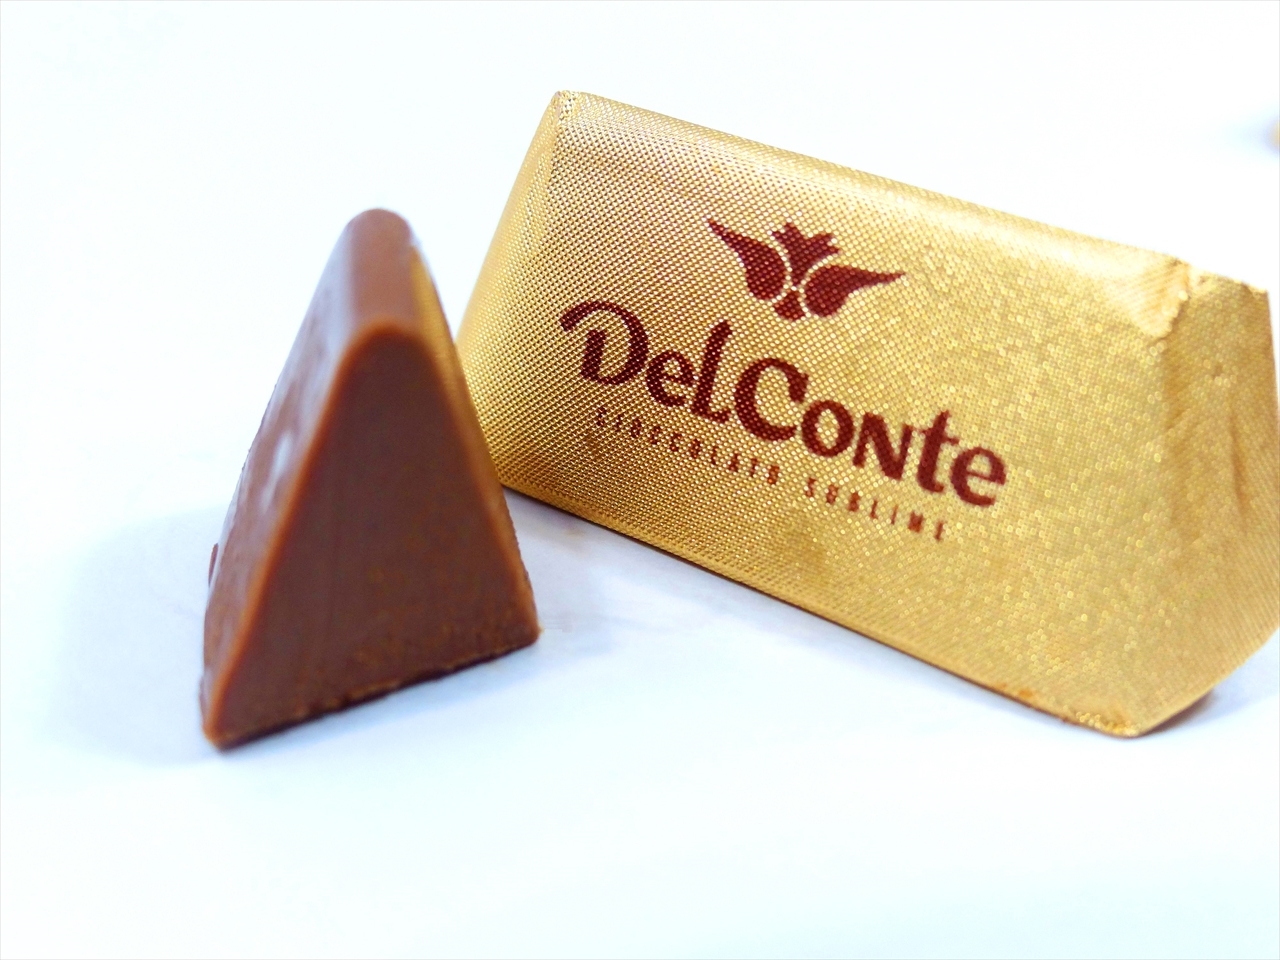 DelConte Cioccolato Sublime - デルコンテ 崇高なチョコレート